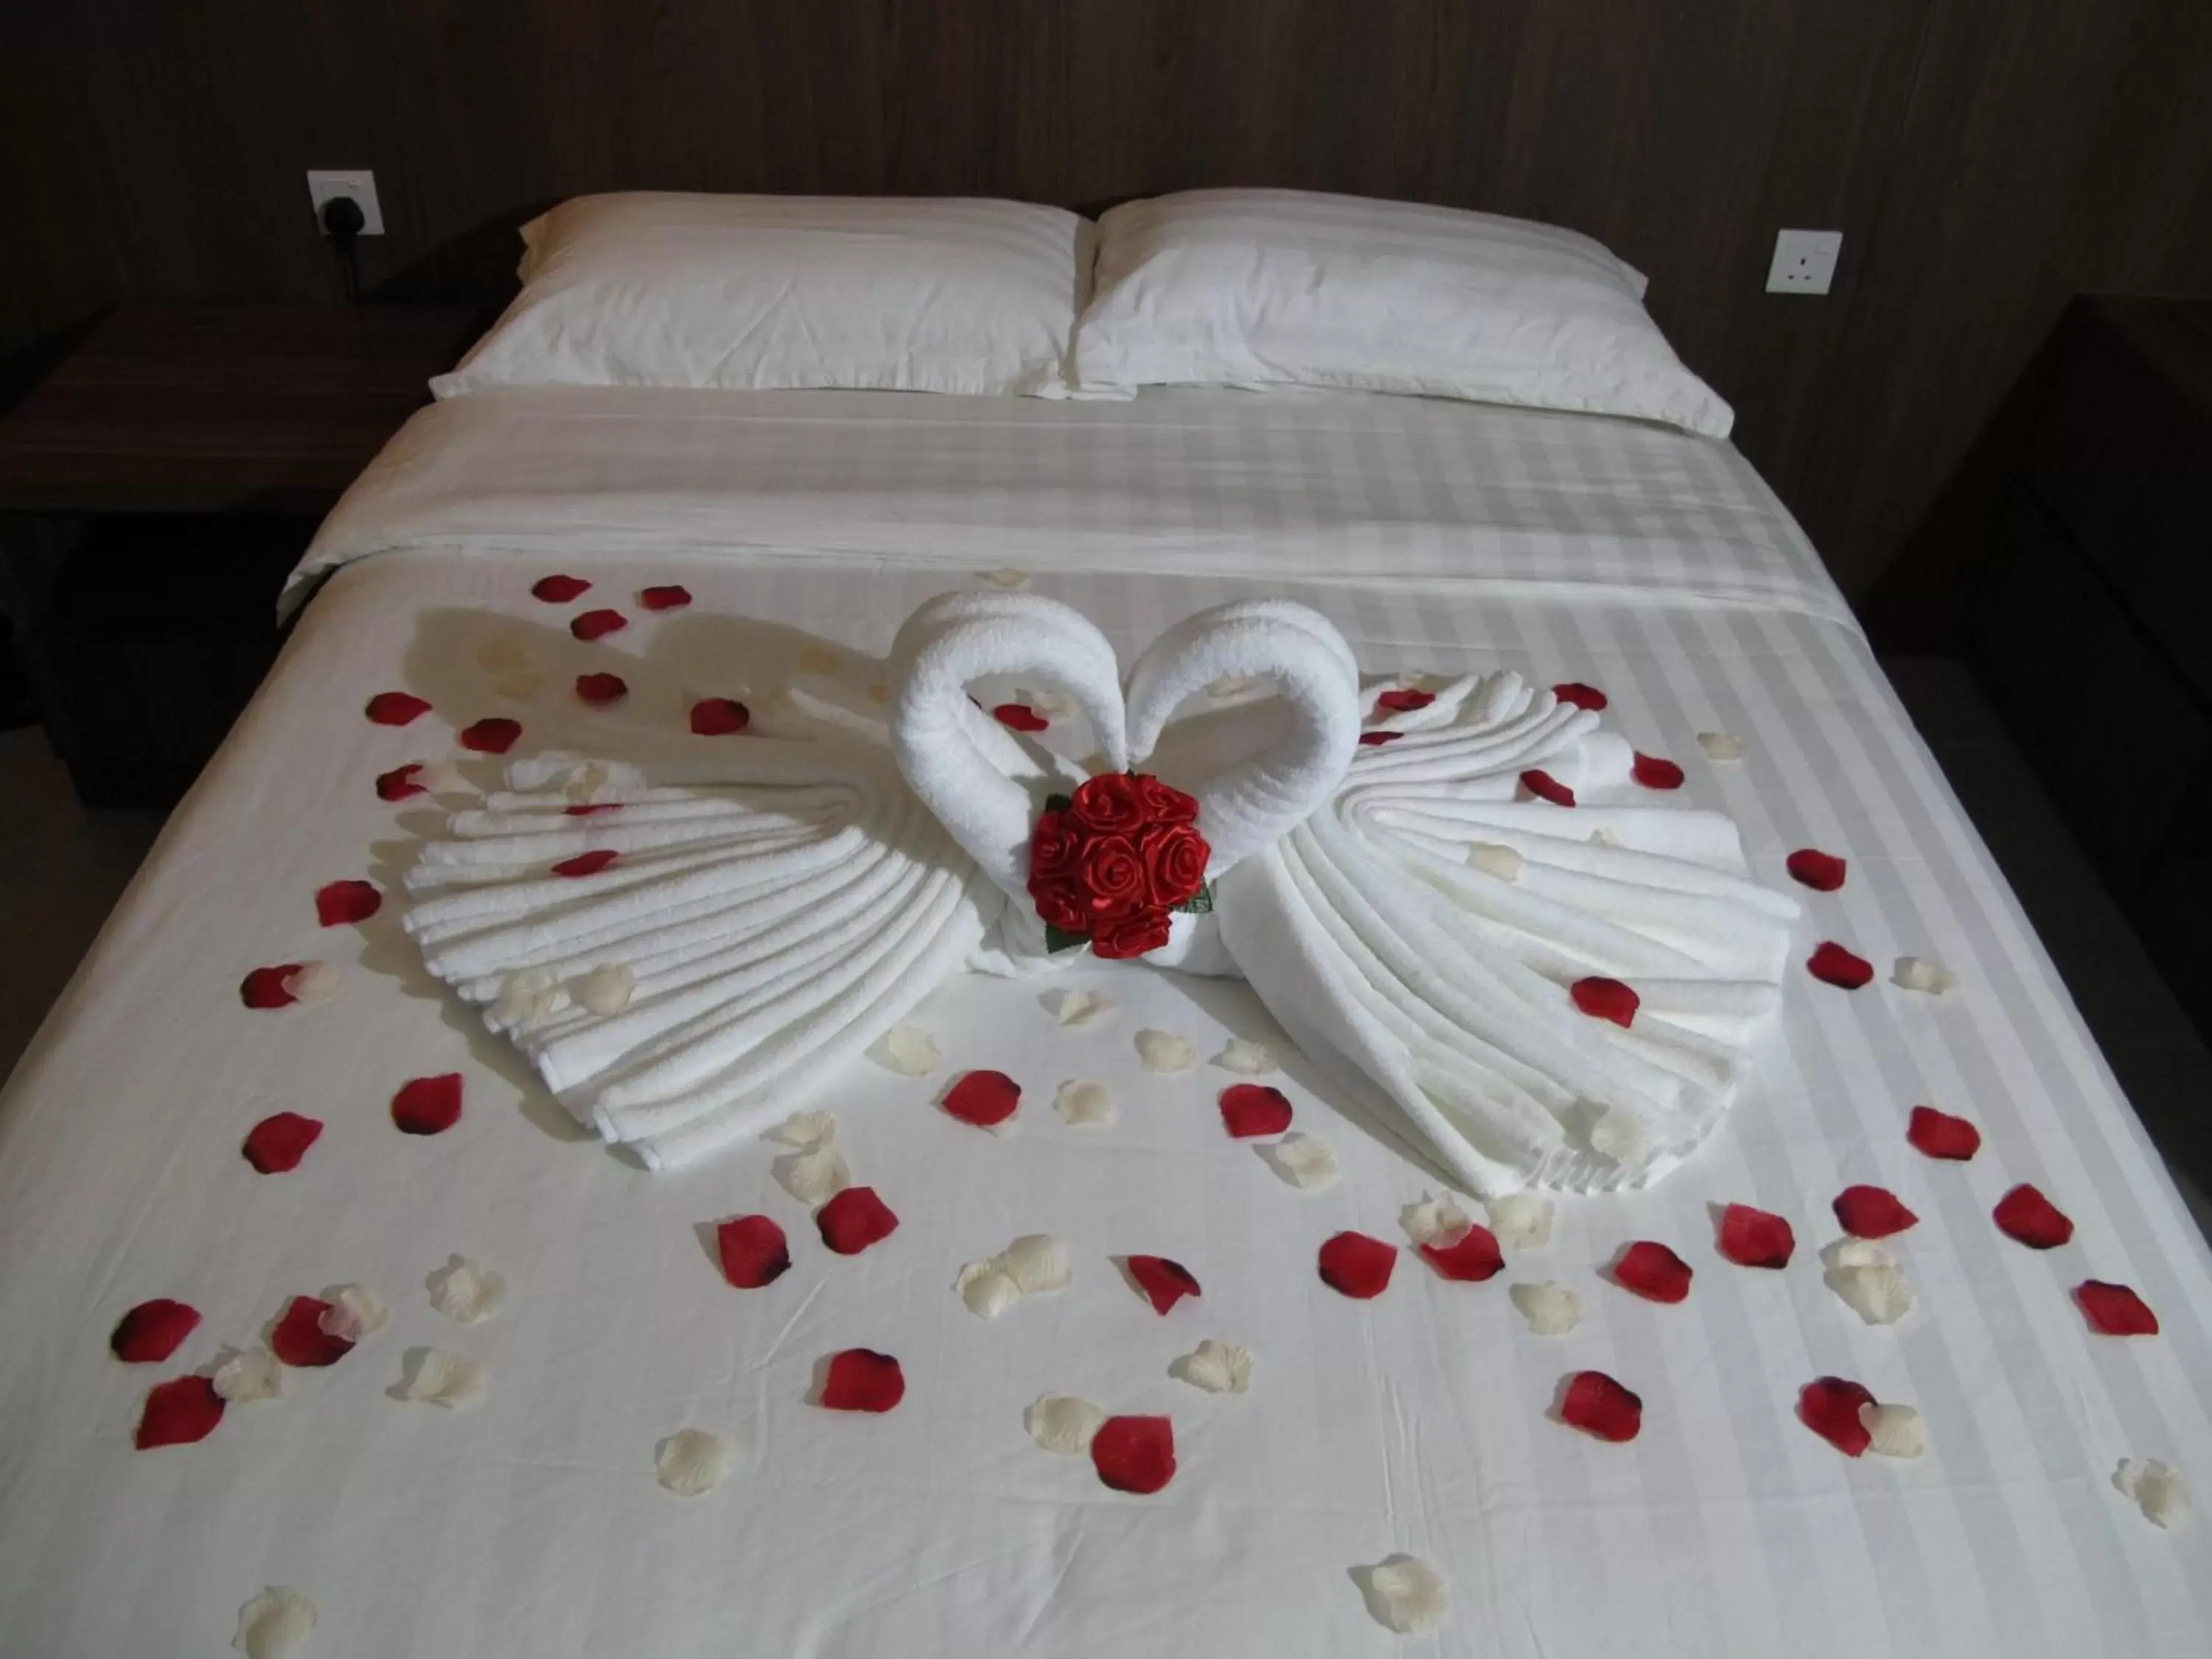 Bed in HOTEL SUKARAMAI